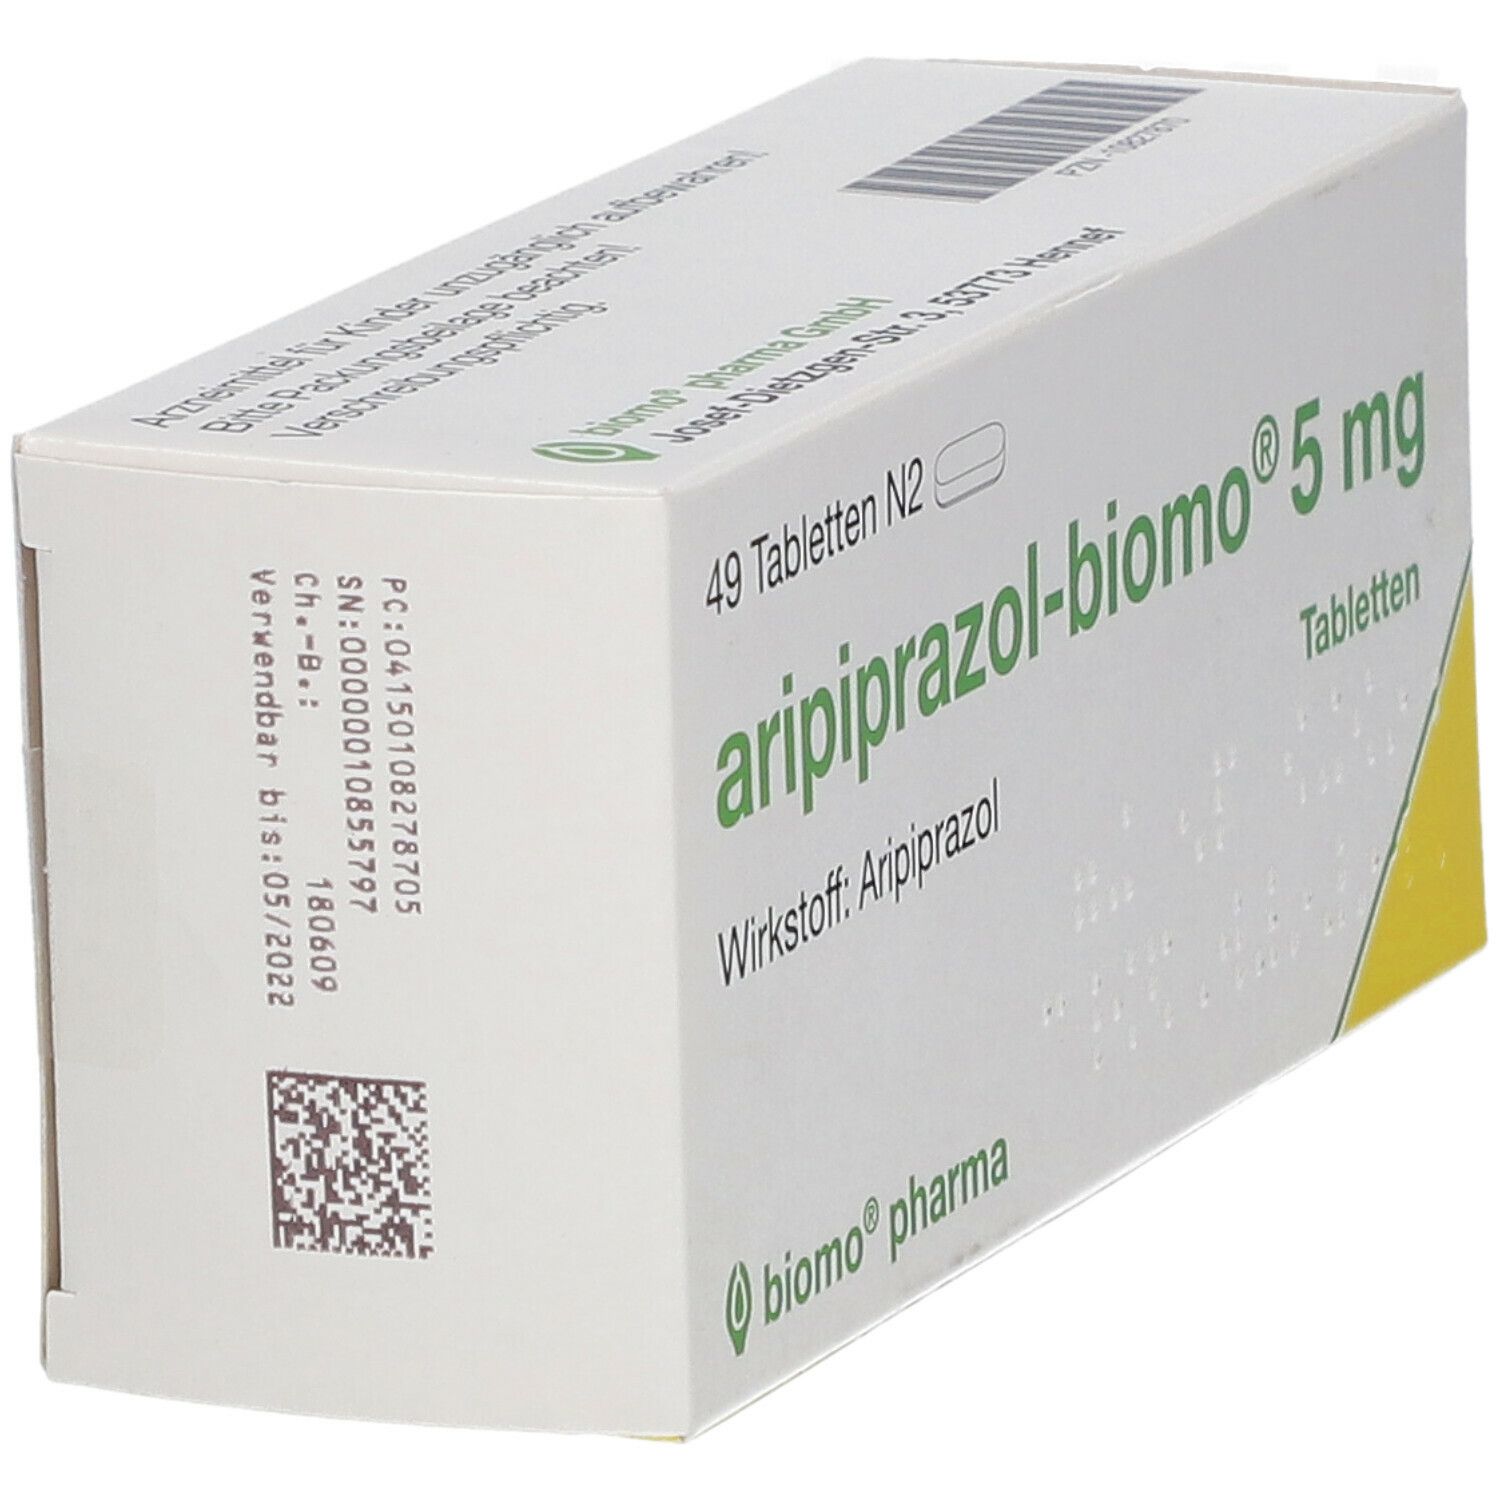 aripiprazol-biomo® 5 mg